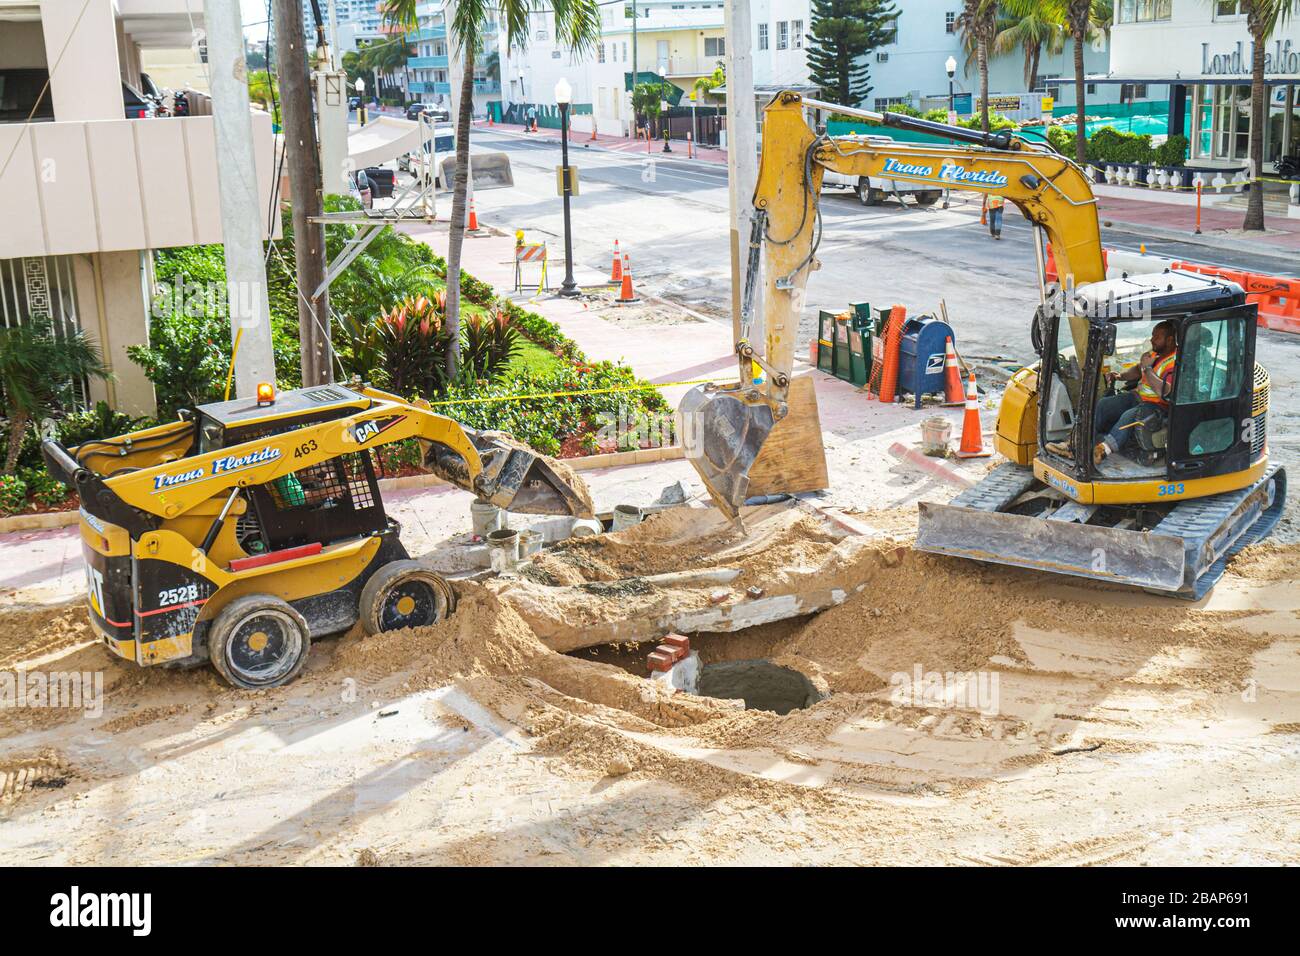 Miami Beach Florida,4th Fourth Street,égout,réparation de route,sous construction nouvelle construction constructeur de chantier,mise à niveau,tracteur pelle hydraulique,opérateur,hommes noirs Banque D'Images